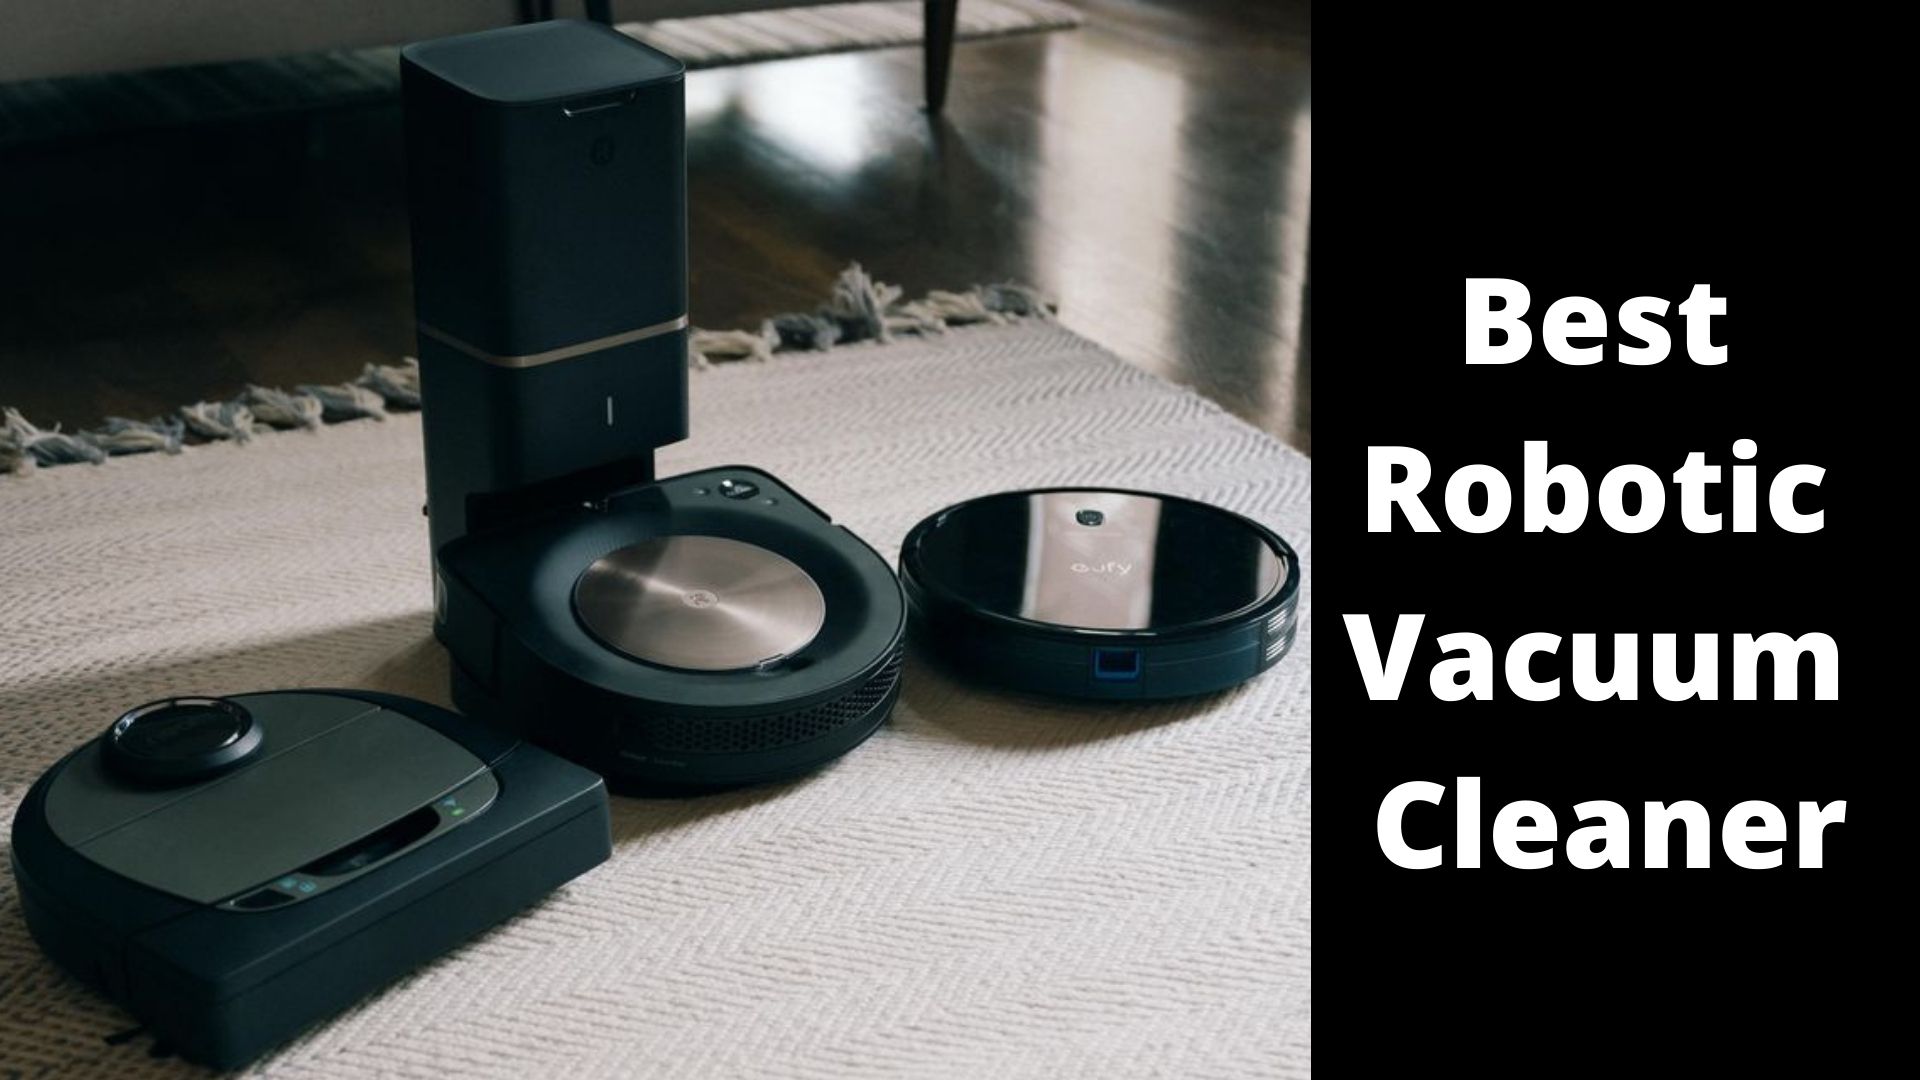 Best Robotic Vacuum cleaner